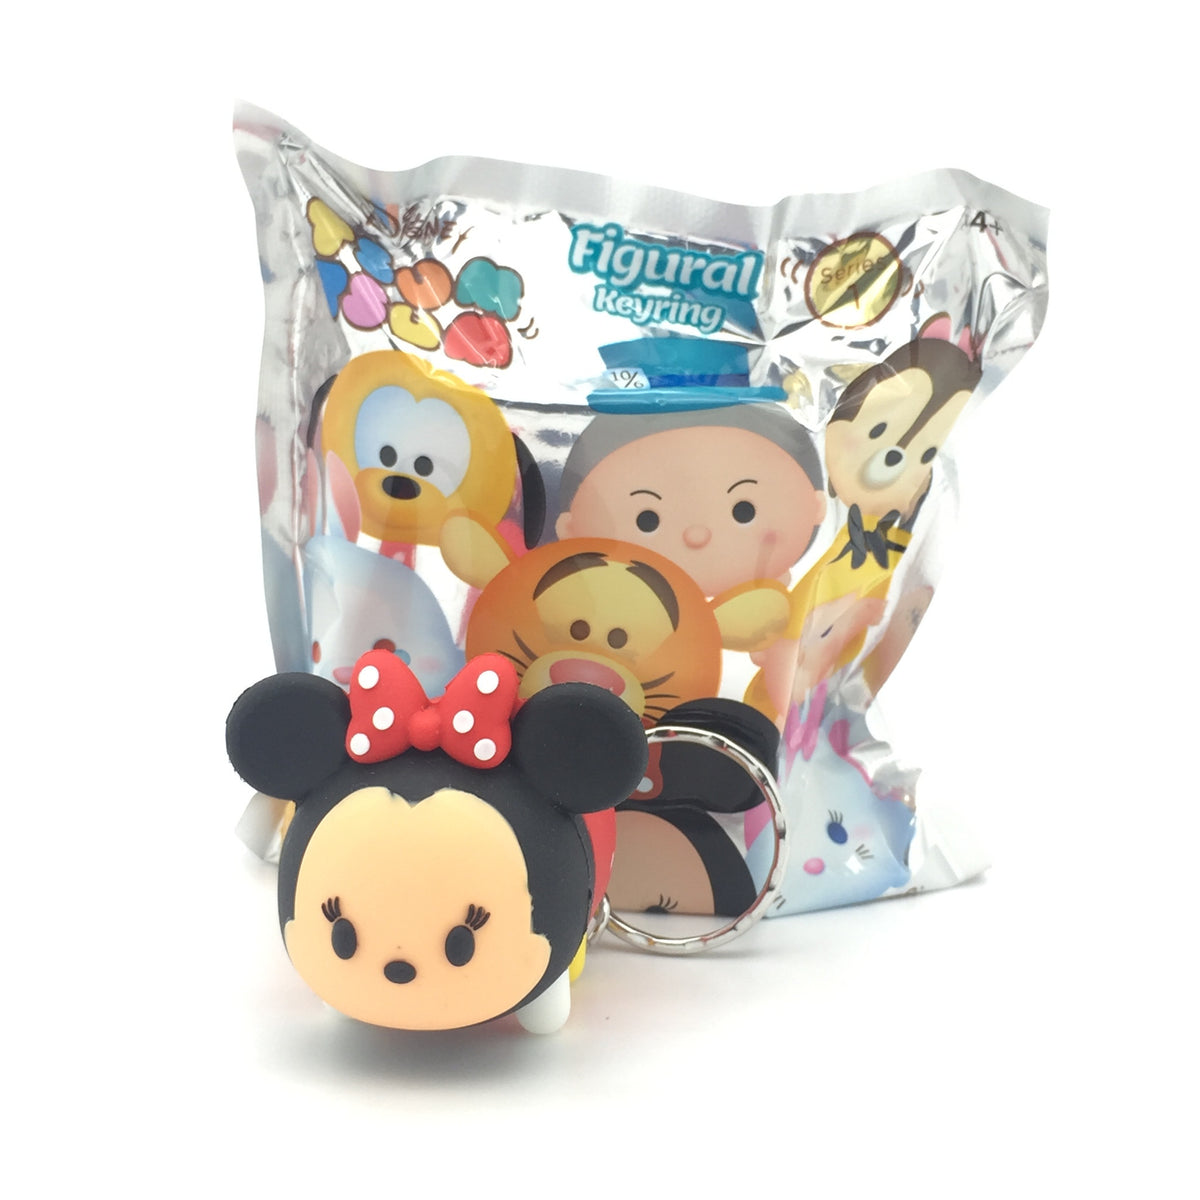 Disney Tsum Tsum Series 1 Figural Keyring Blind Bag - Mindzai
 - 1